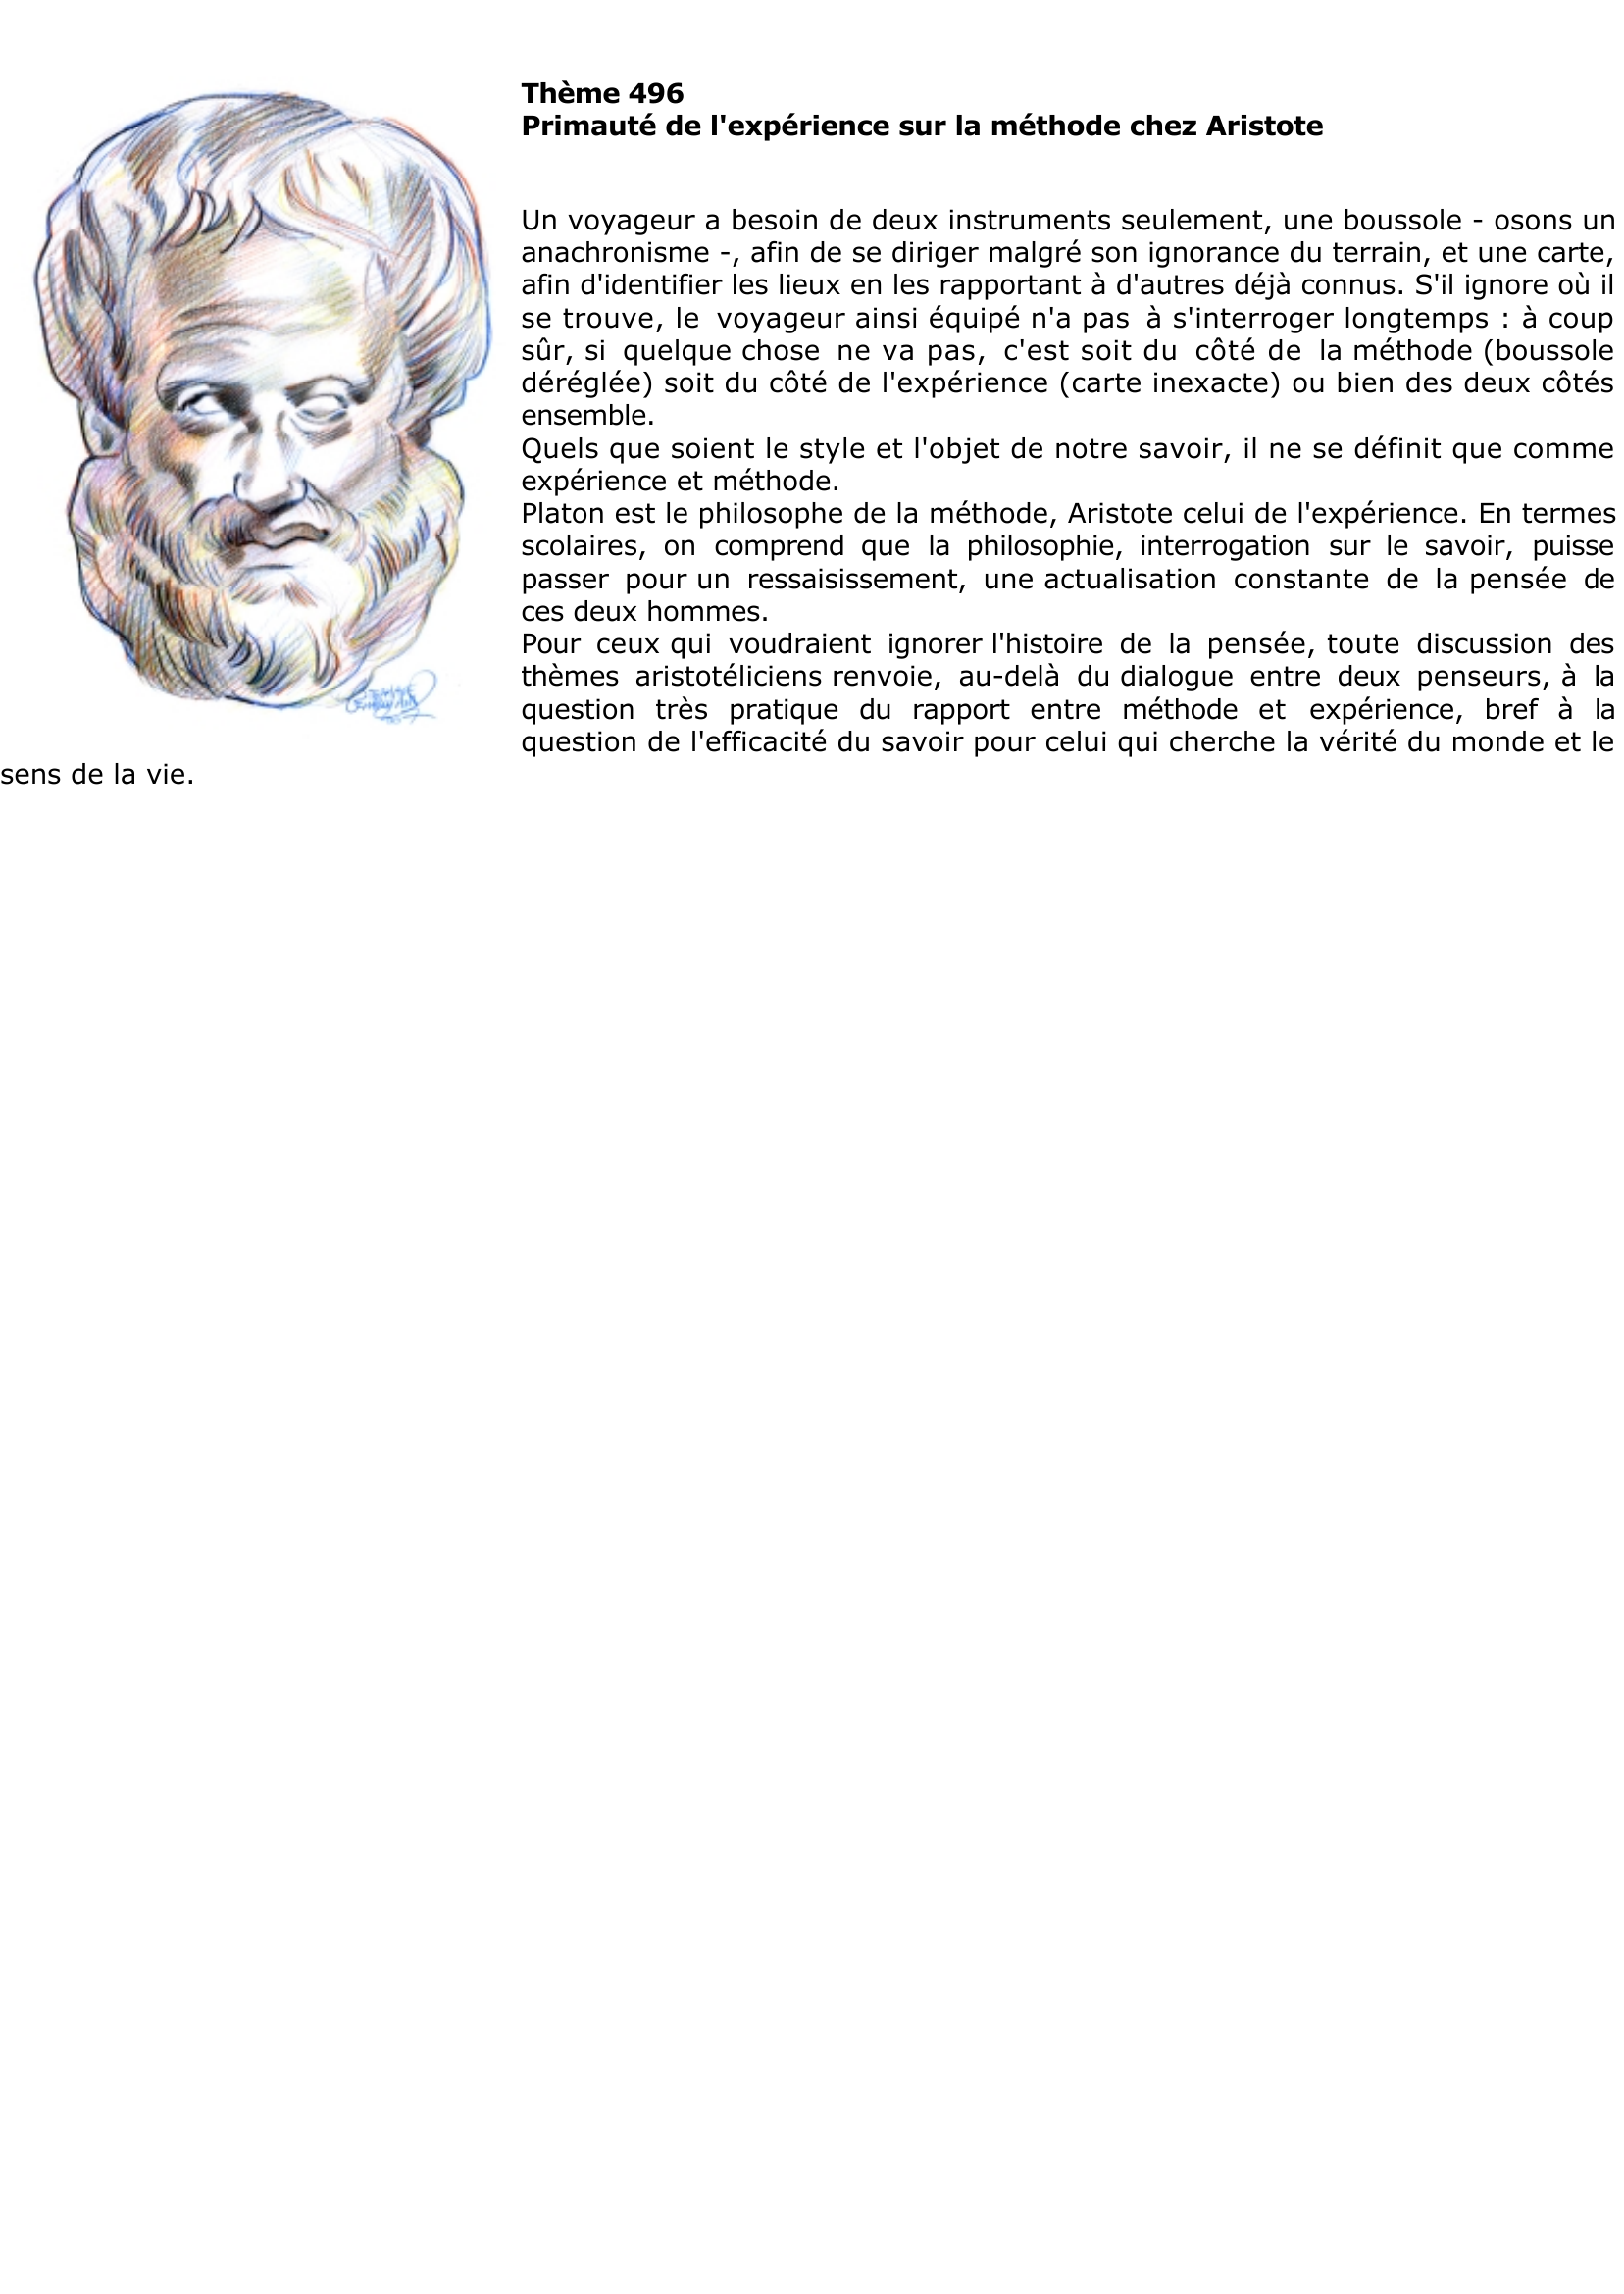 Prévisualisation du document Primauté de l'expérience sur la 

méthode chez Aristote